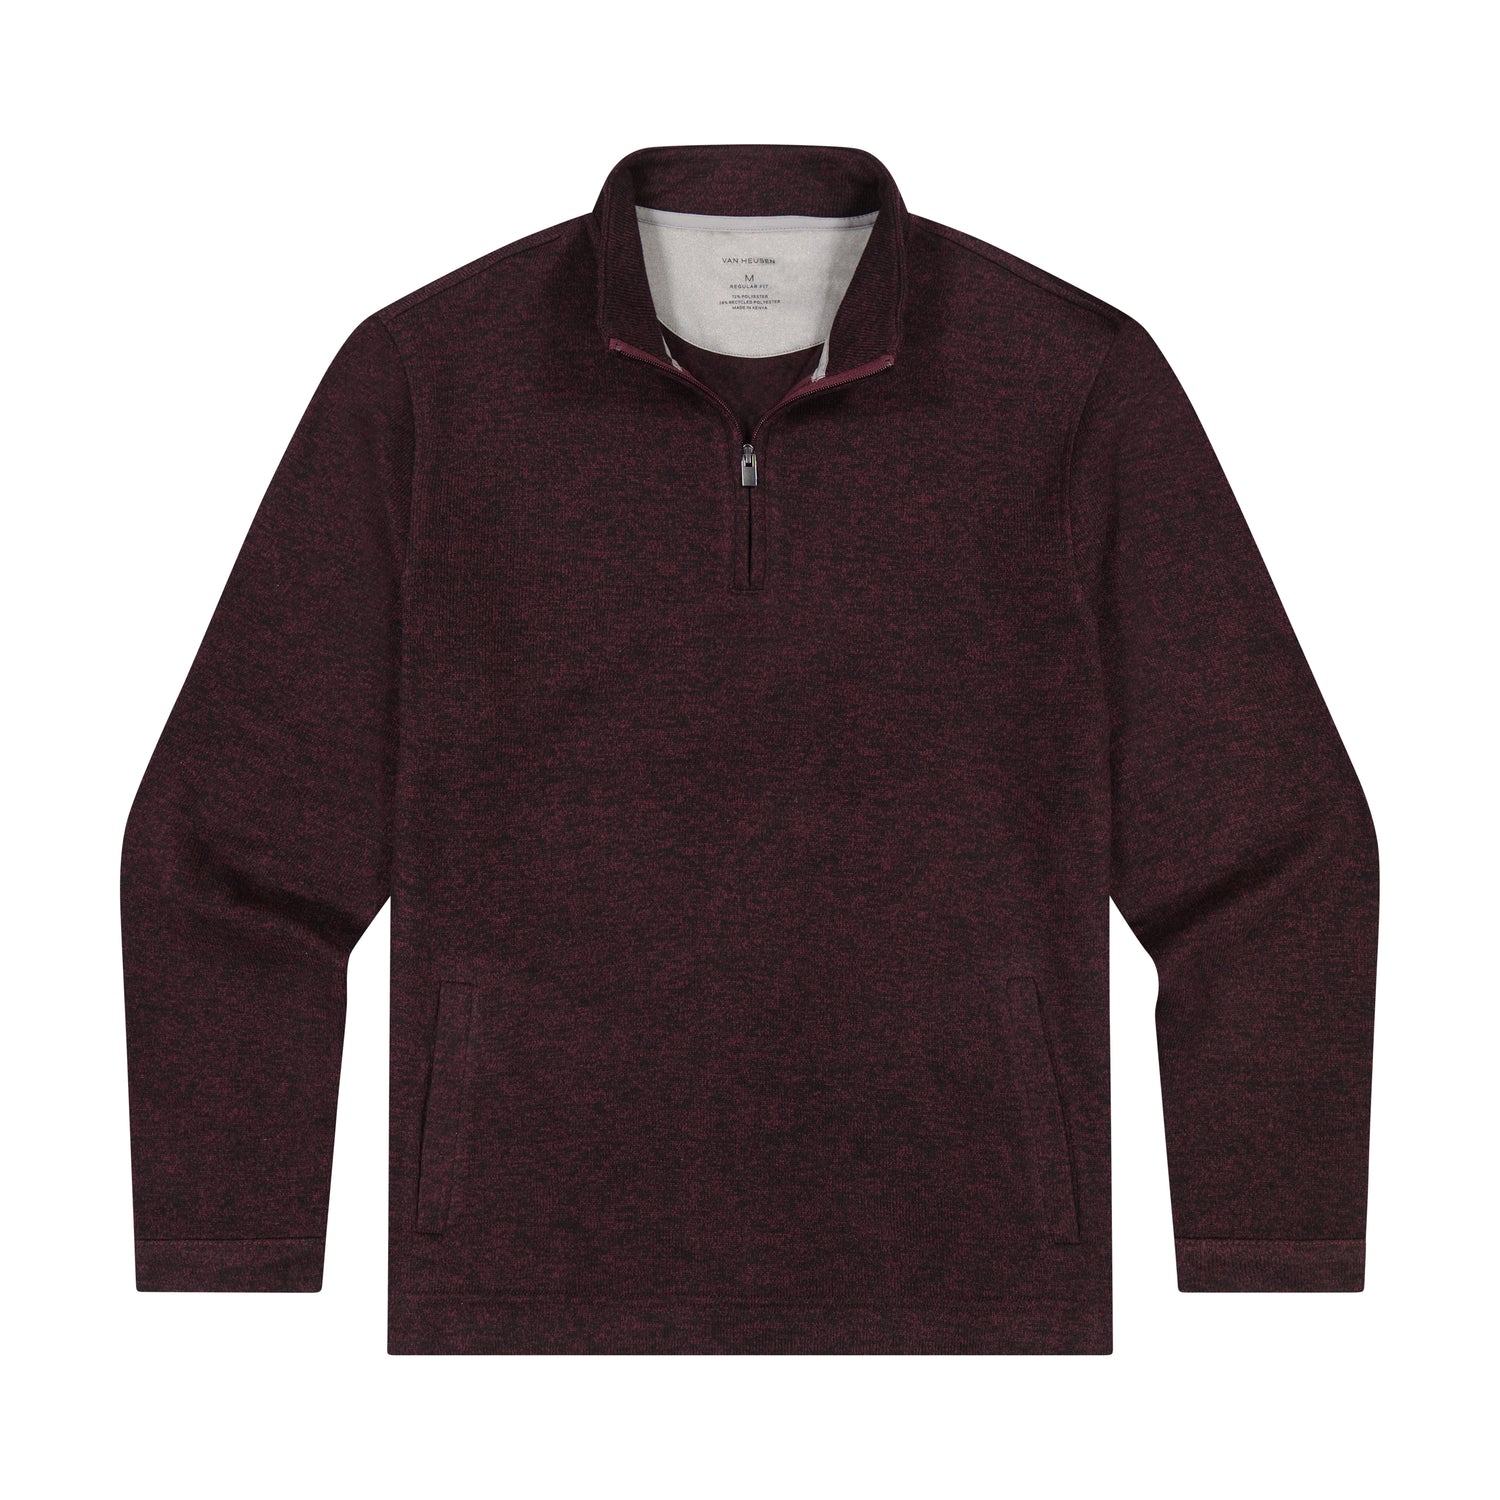 Essential Sweater Fleece Quarter Zip Pullover – Regular Fit